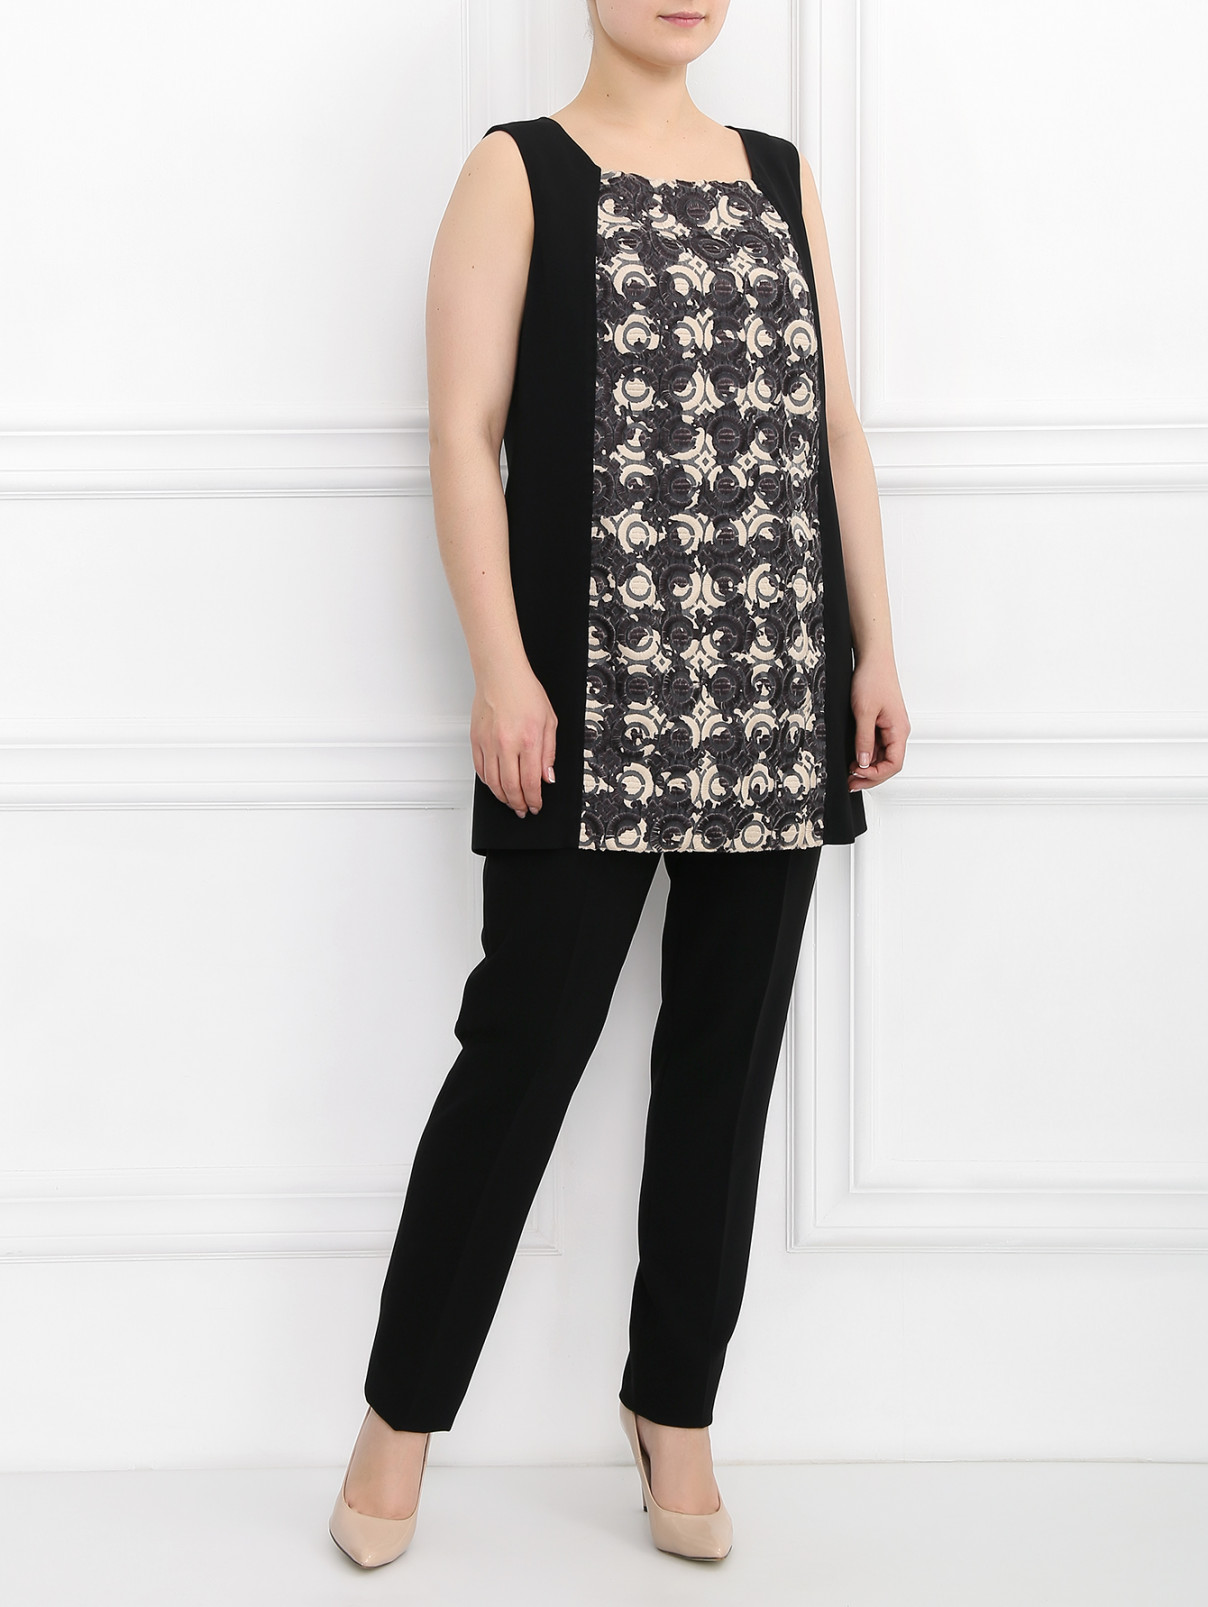 Топ декорированный вышивкой Marina Rinaldi  –  Модель Общий вид  – Цвет:  Черный